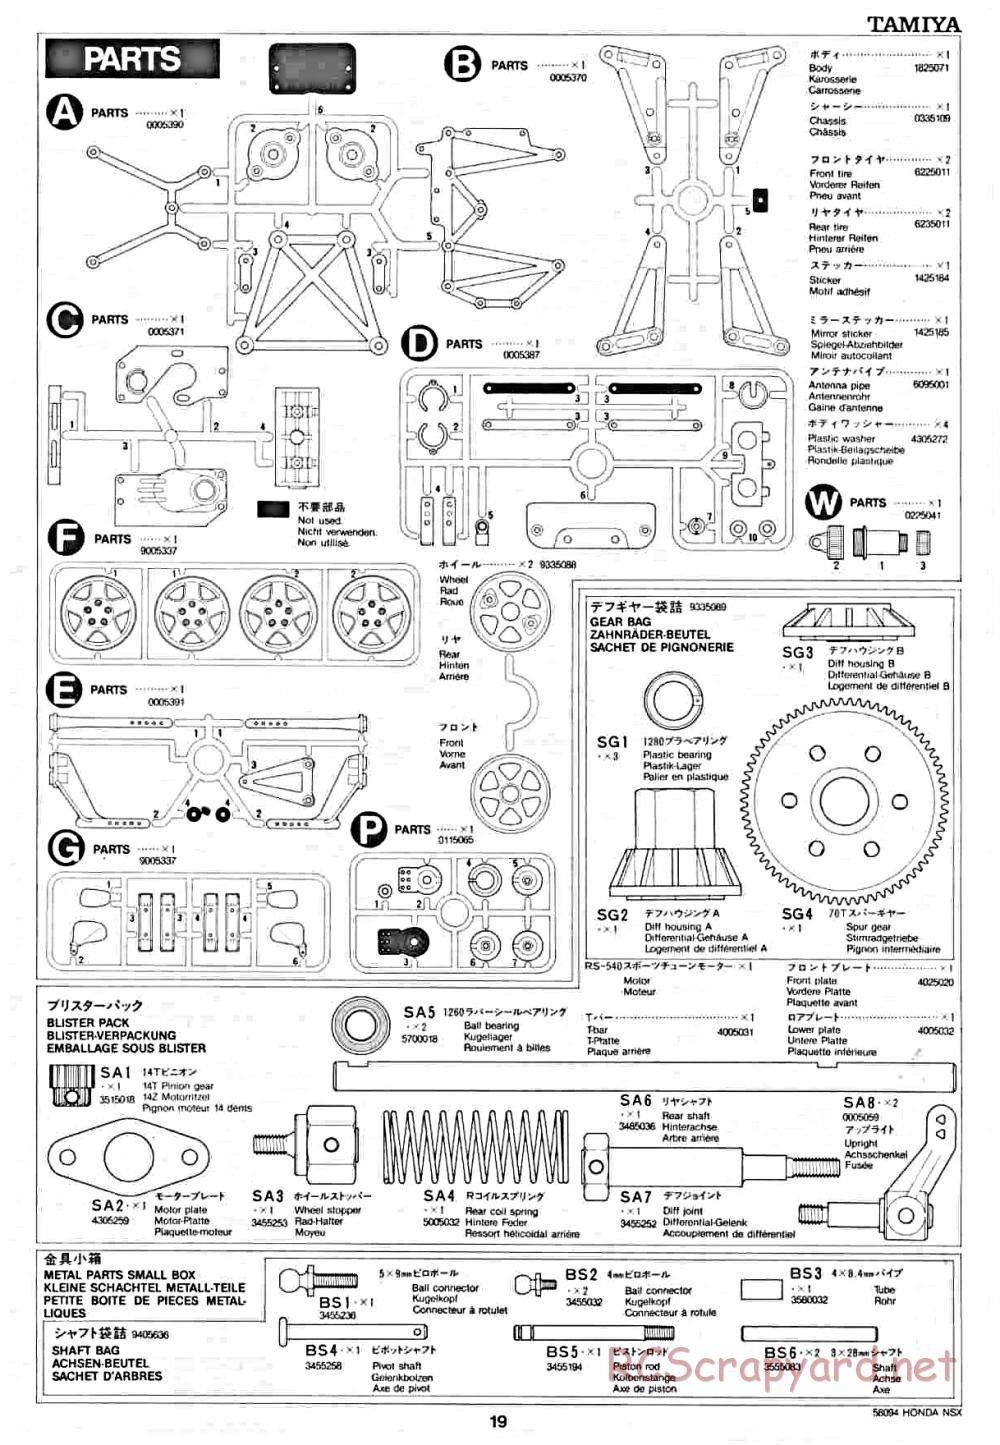 Tamiya - Honda NSX - 58094 - Manual - Page 19